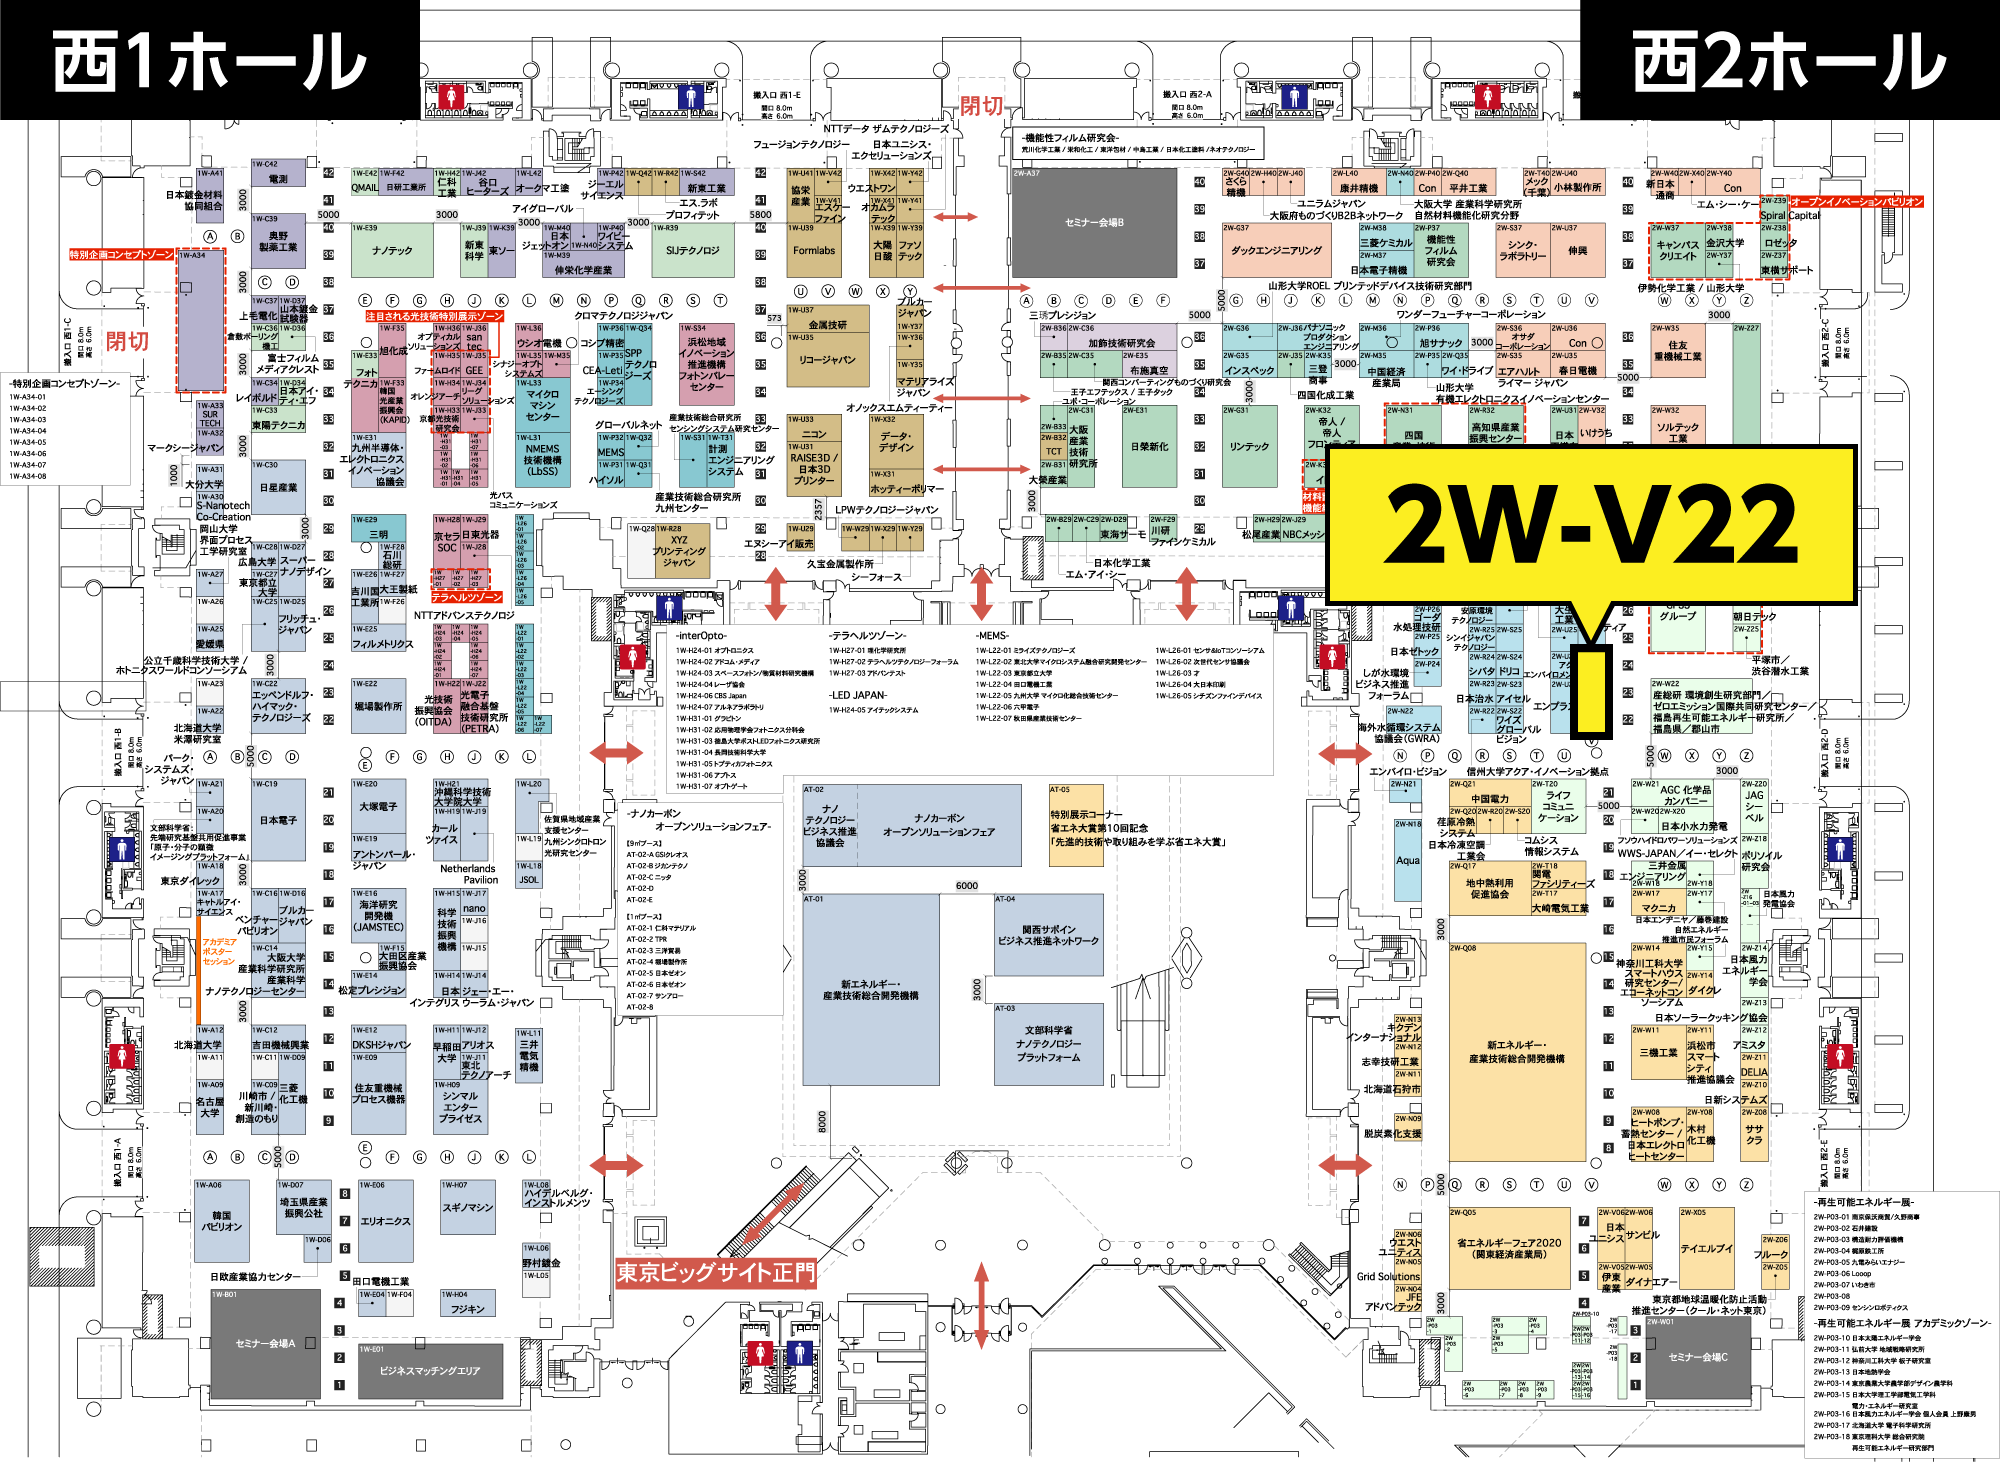 インターアクア2021 東京ビッグサイト西1・2ホールブースレイアウト